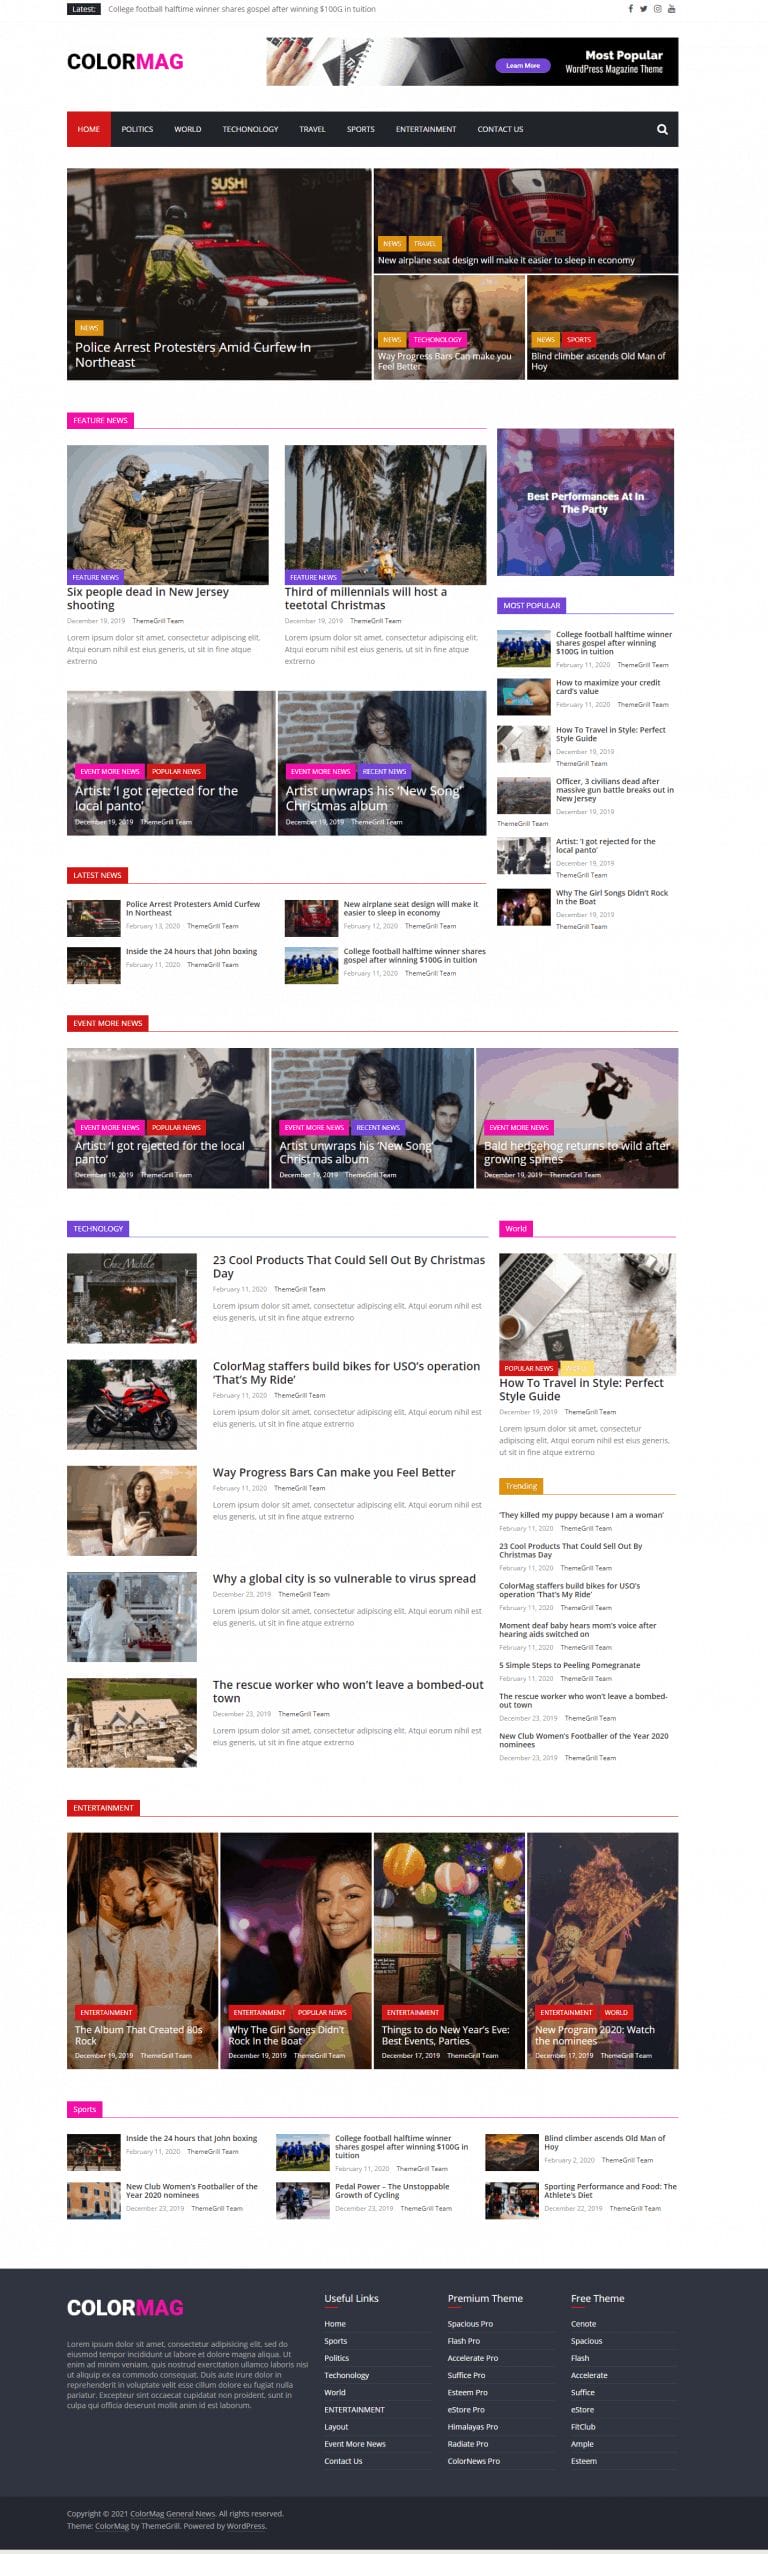 colormag homepage